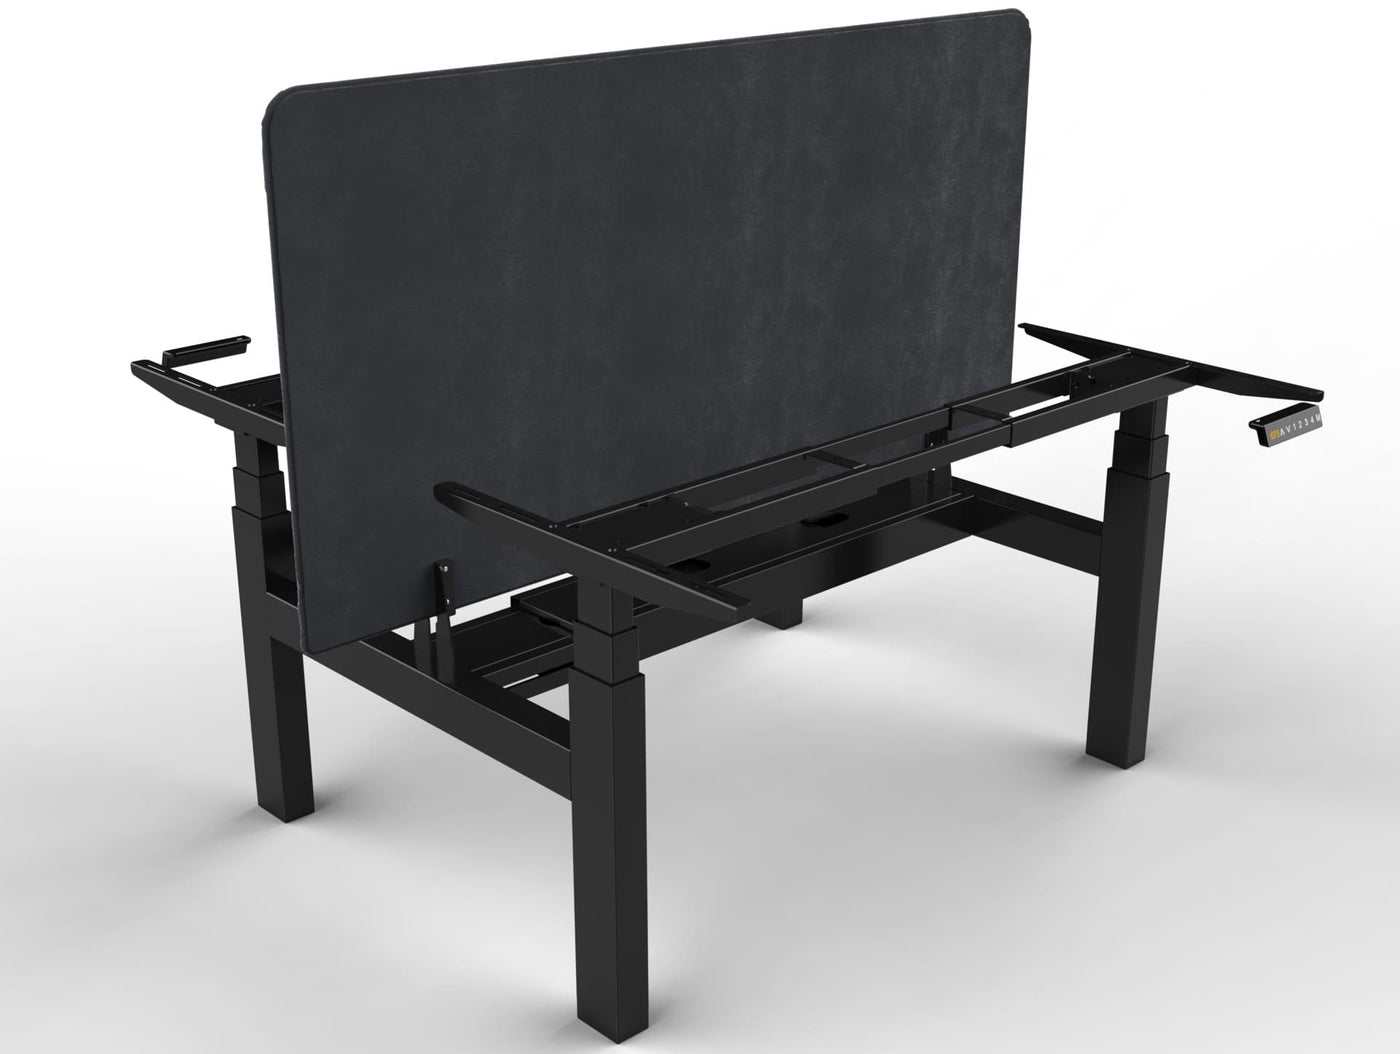 Piètement assis debout motorisé DuoDesk : un bureau collaboratif ergonomique  UP AND DESK Noir Anthracite 160 x 80 